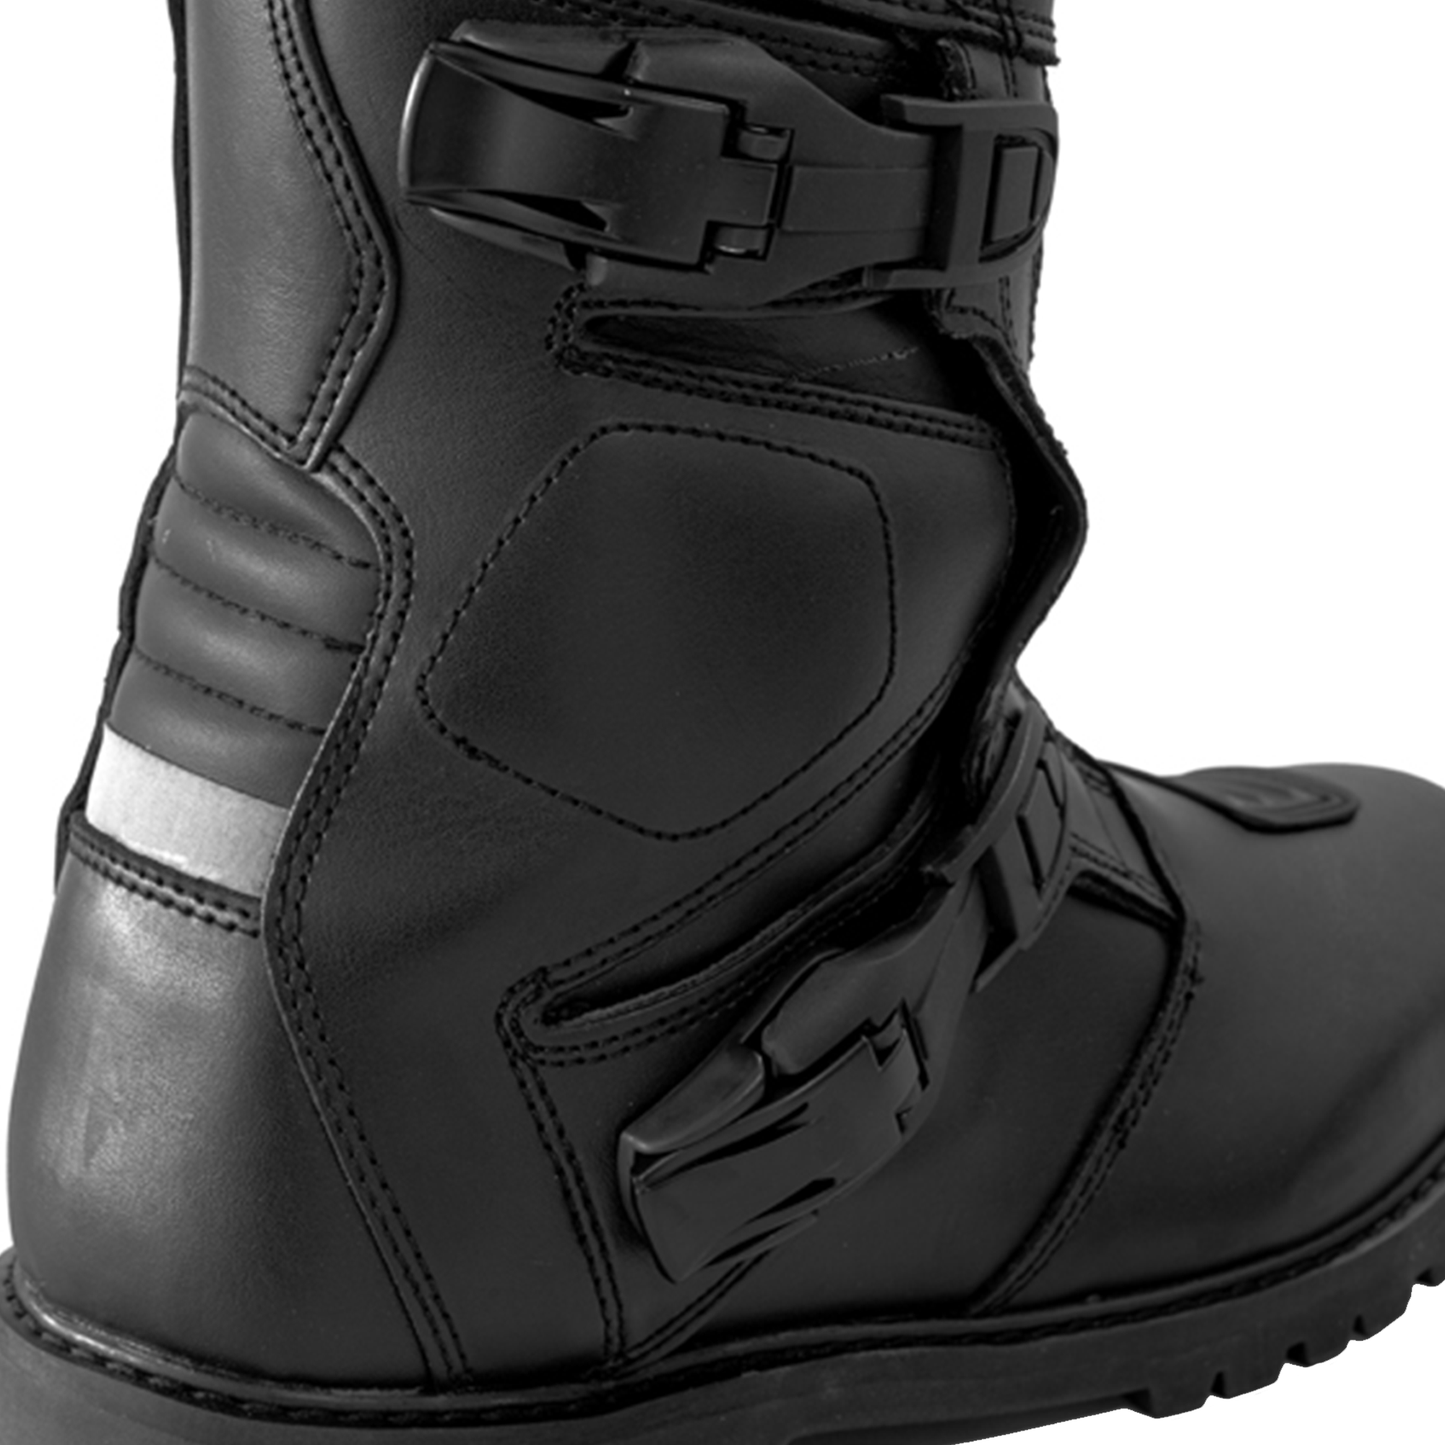 Richa Adventure Waterproof Boots - Black